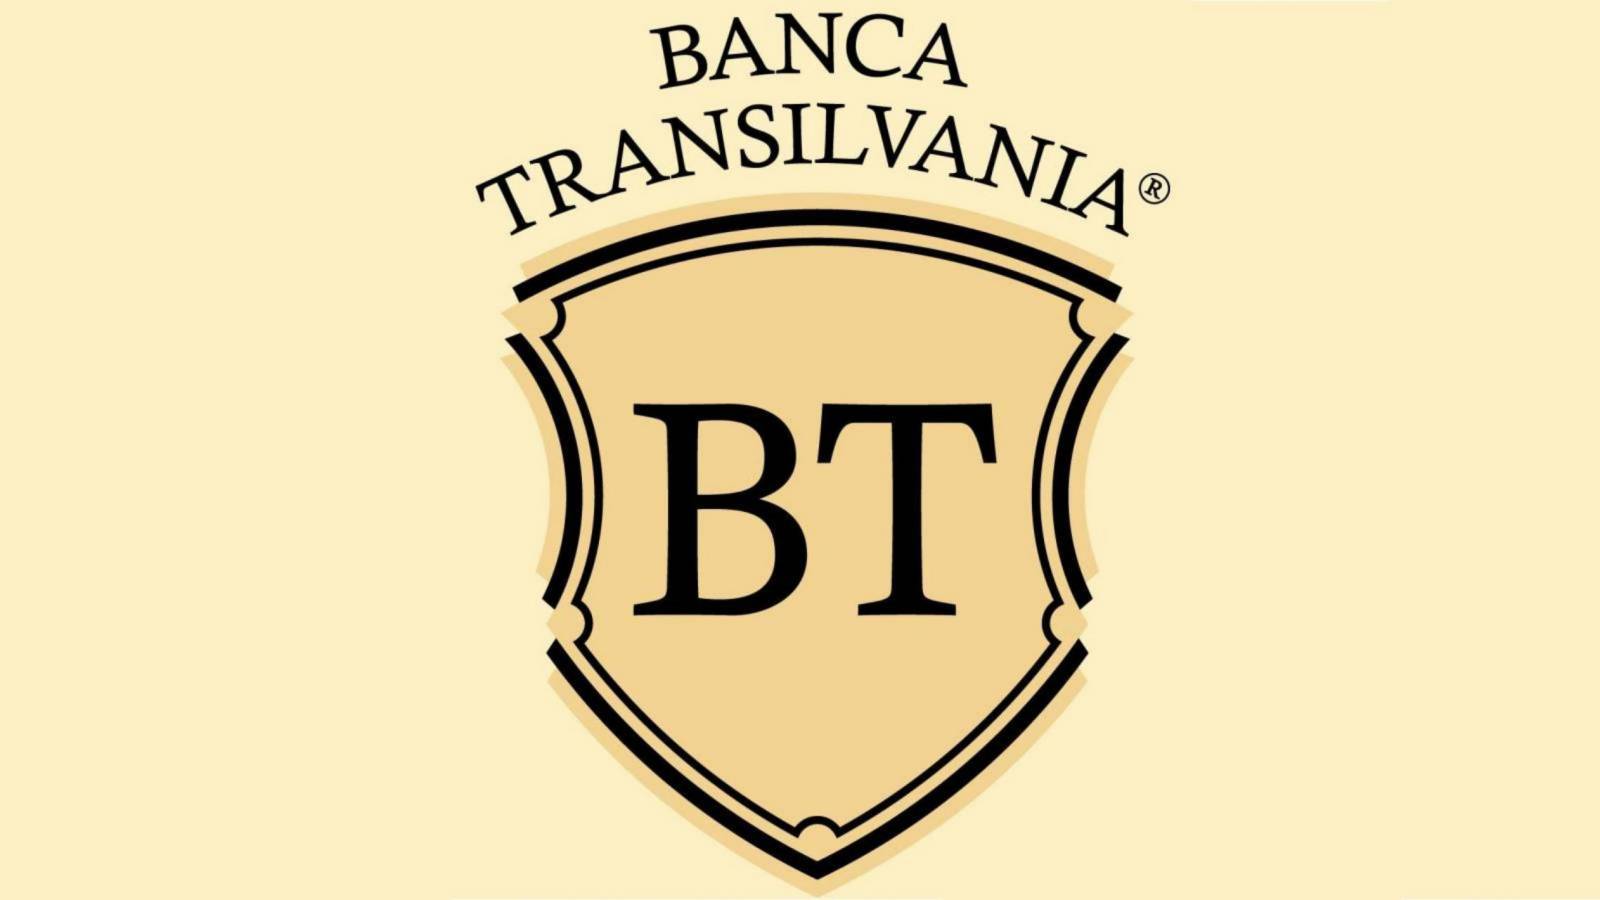 Points BANCA Transilvanie